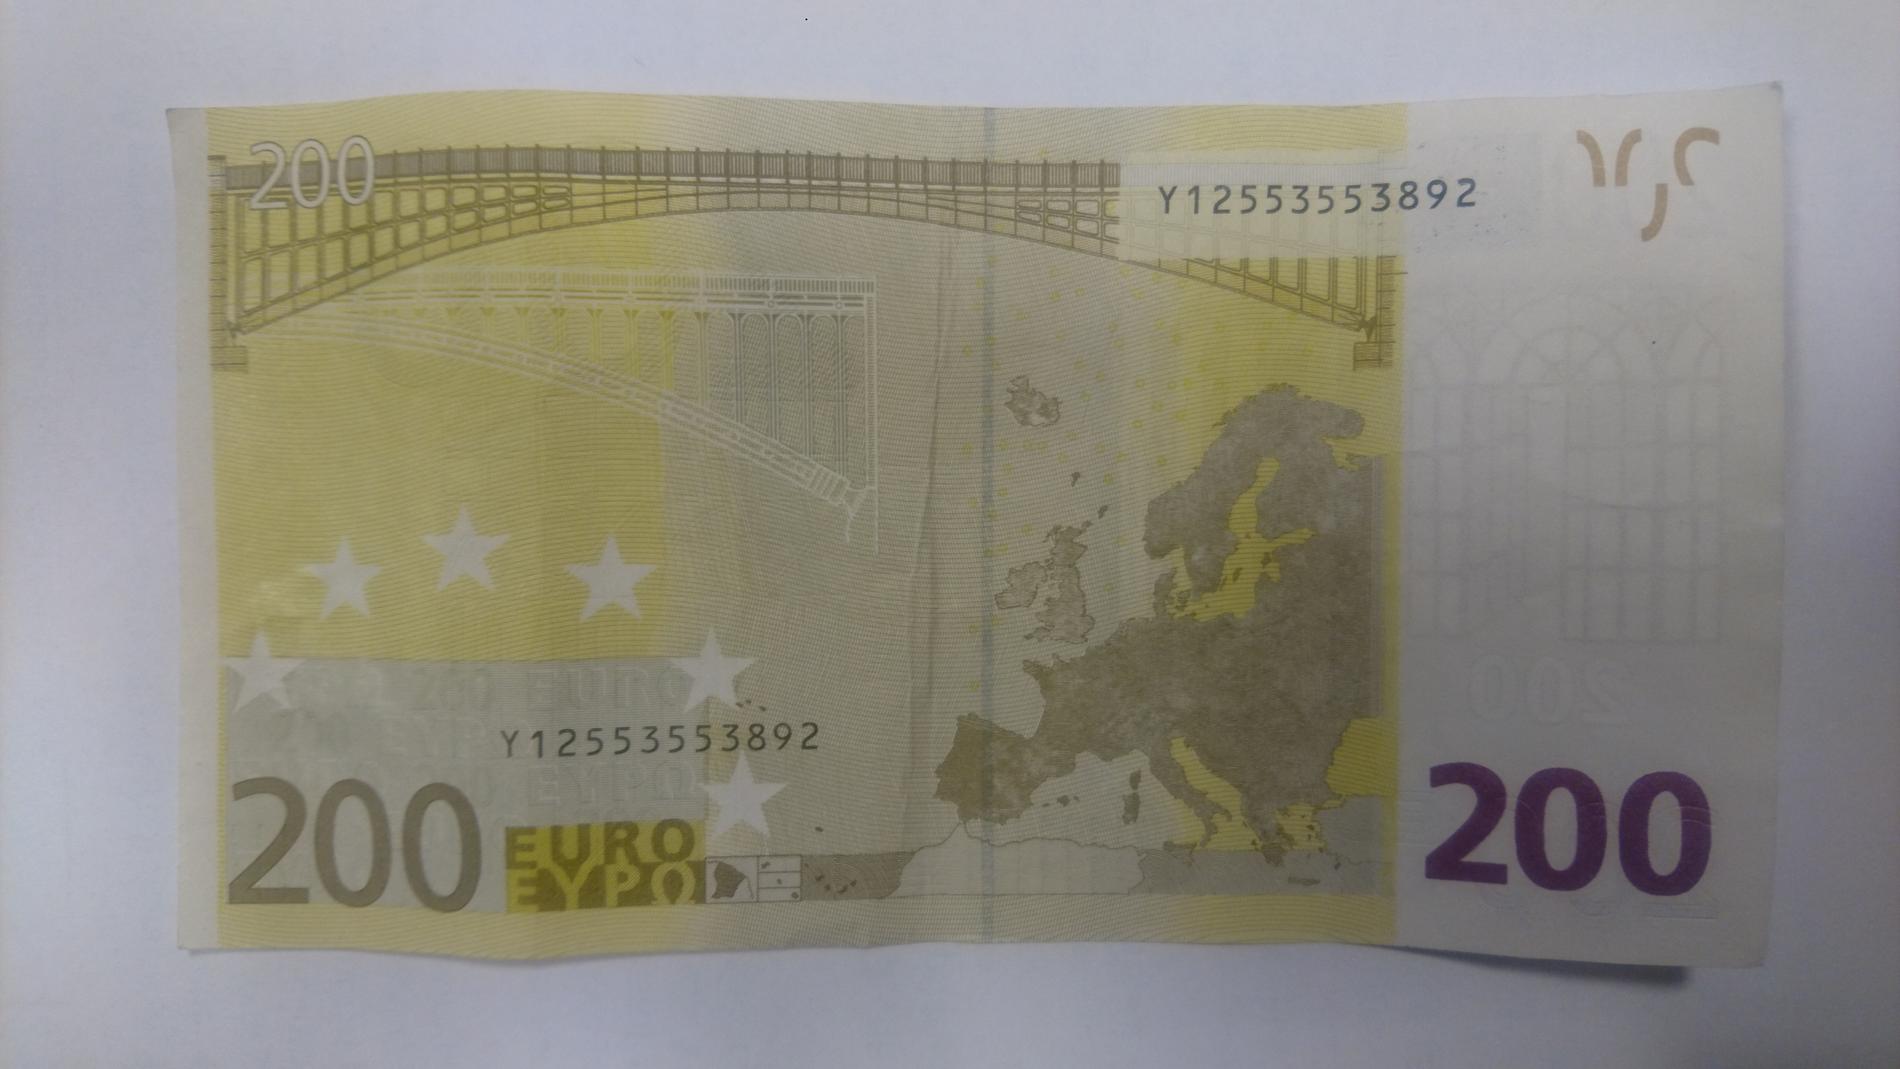 ANTATT FALSK: Dette er en av sedlene, en 200-euroseddel, som ble funnet i tilknytning til mannen. Sedlene er sendt til Kripos for analyse, men politiet er ganske sikre på at i hvert fall eurosedlene er falske. Mannen har også erkjent straffskyld.